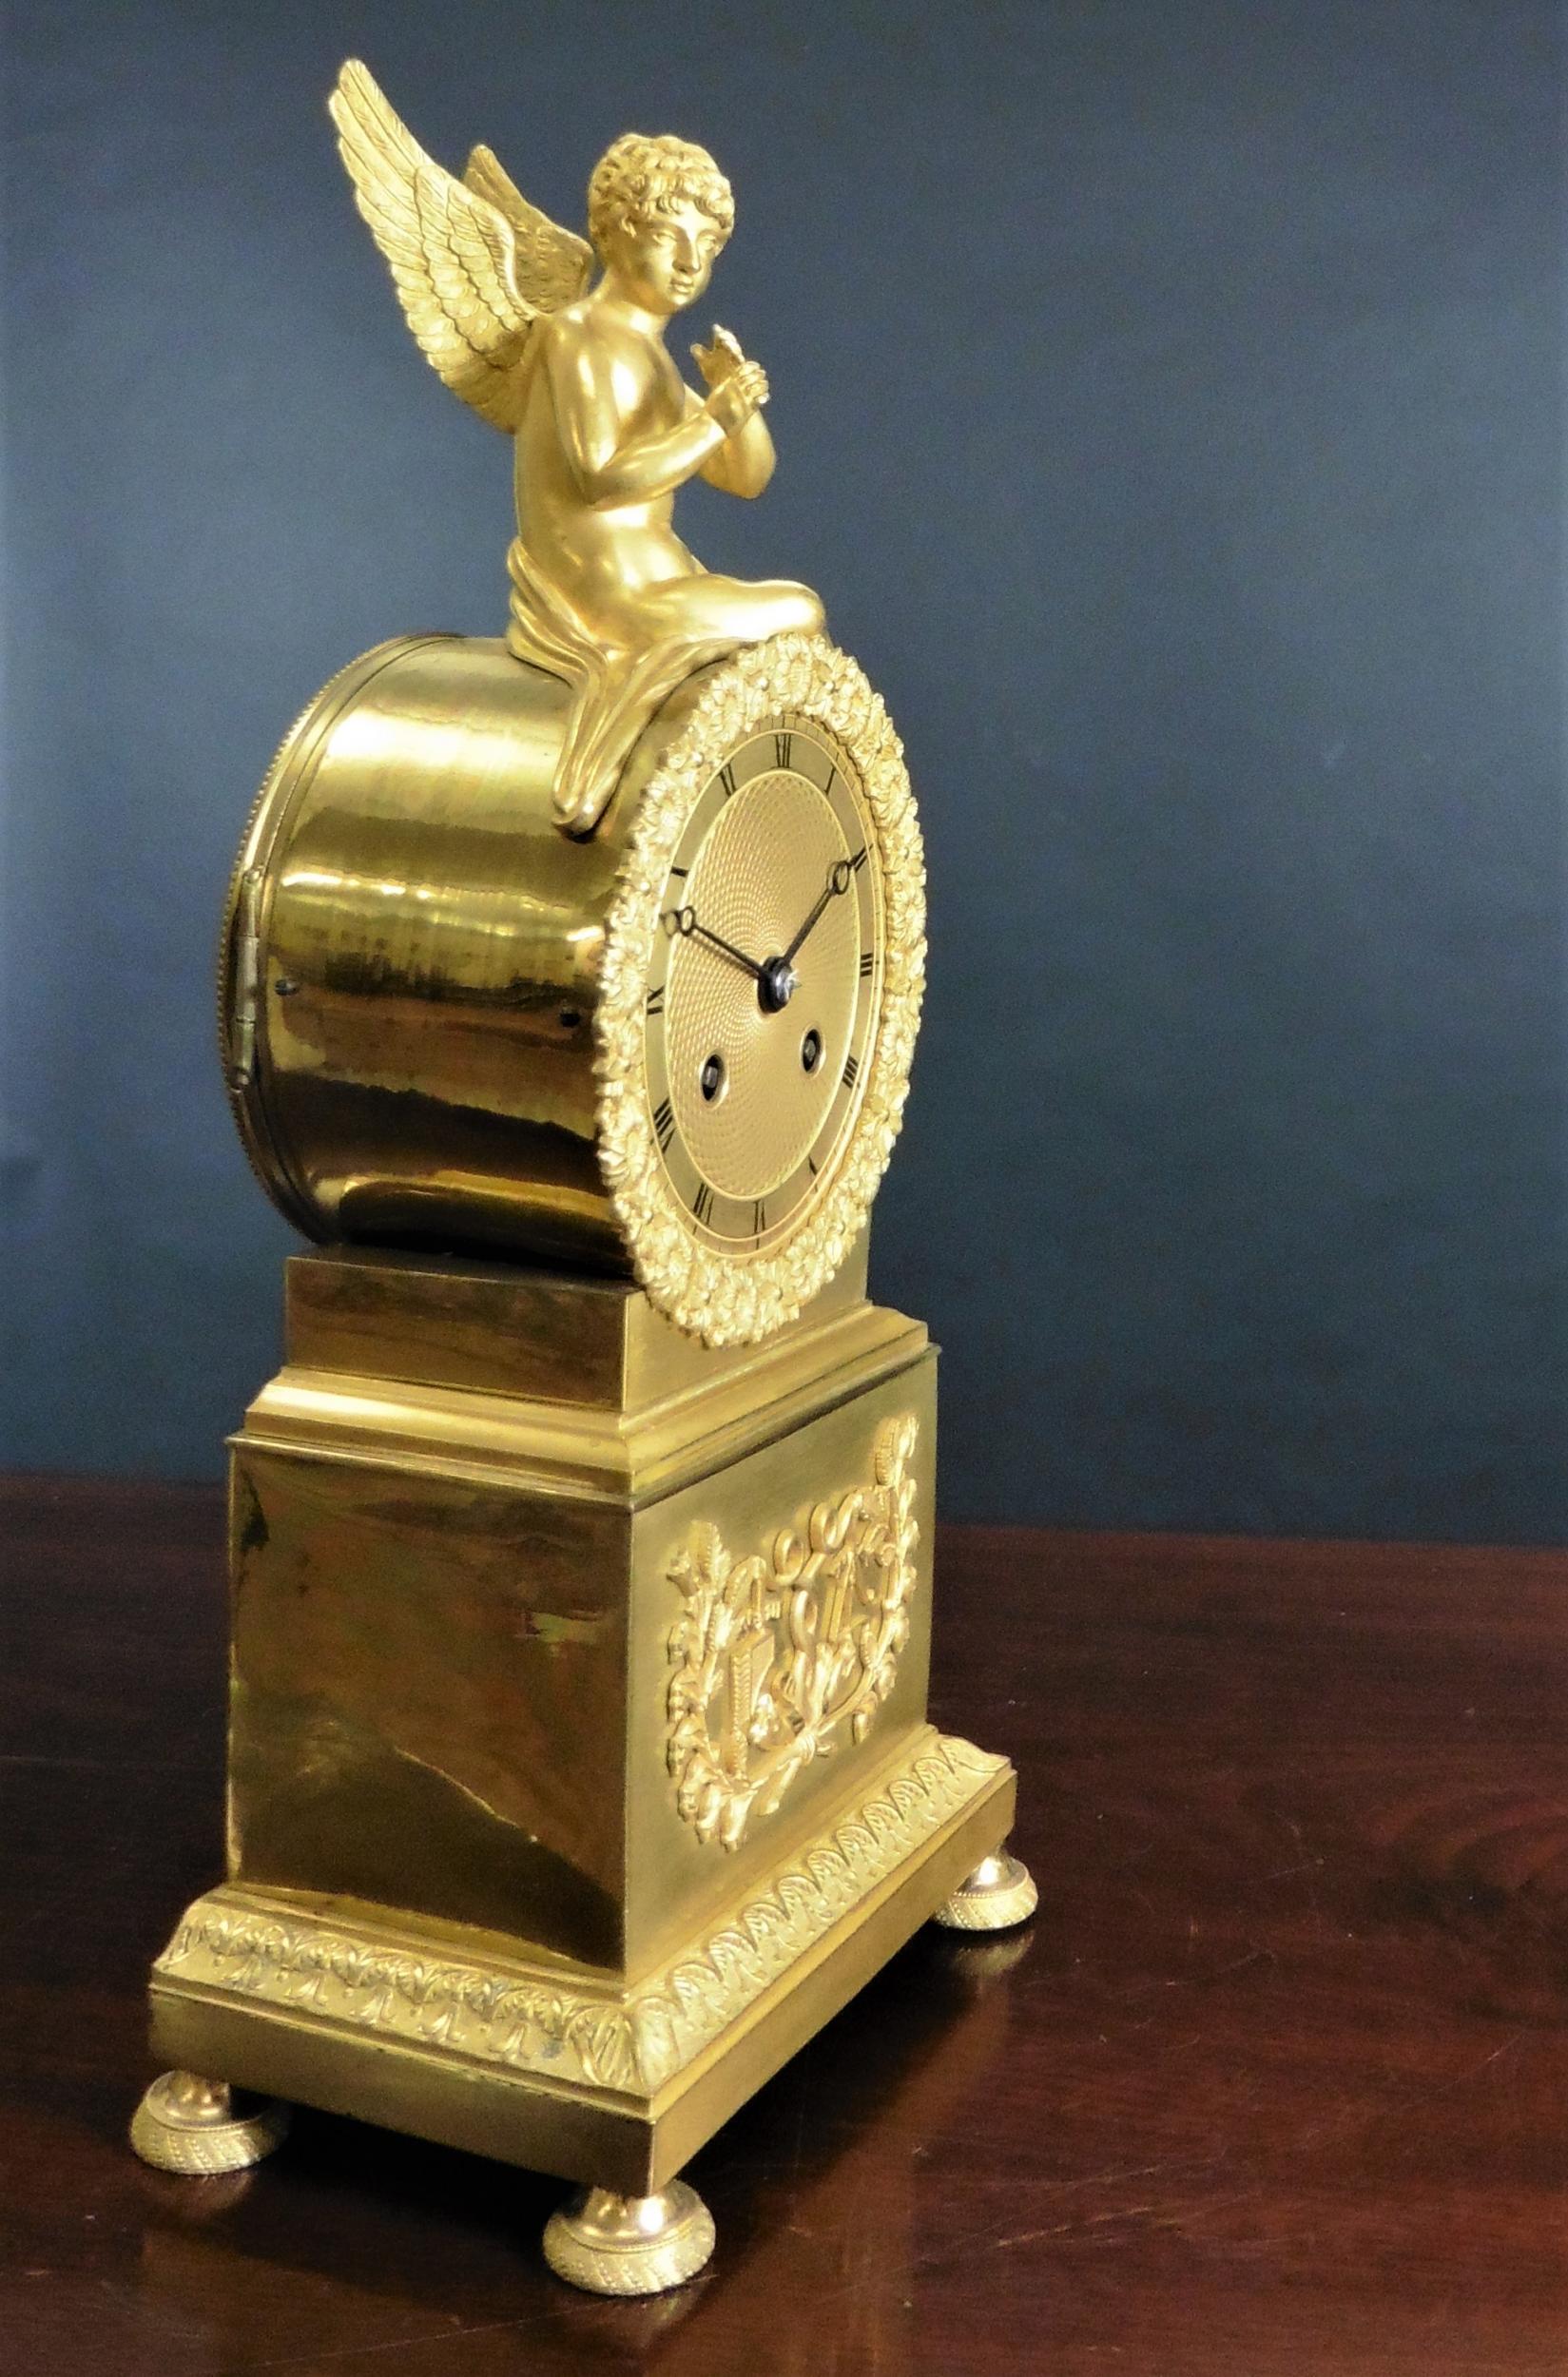 Ormolu Französisch Empire-Uhr, Trommelfell Gehäuse mit aufgesetzten Fries Dekoration auf der Basis, steht auf gedreht und graviert Füße. 

Das vergoldete Zifferblatt mit römischen Ziffern, originalen Zeigern und floralem Gussrahmen ist